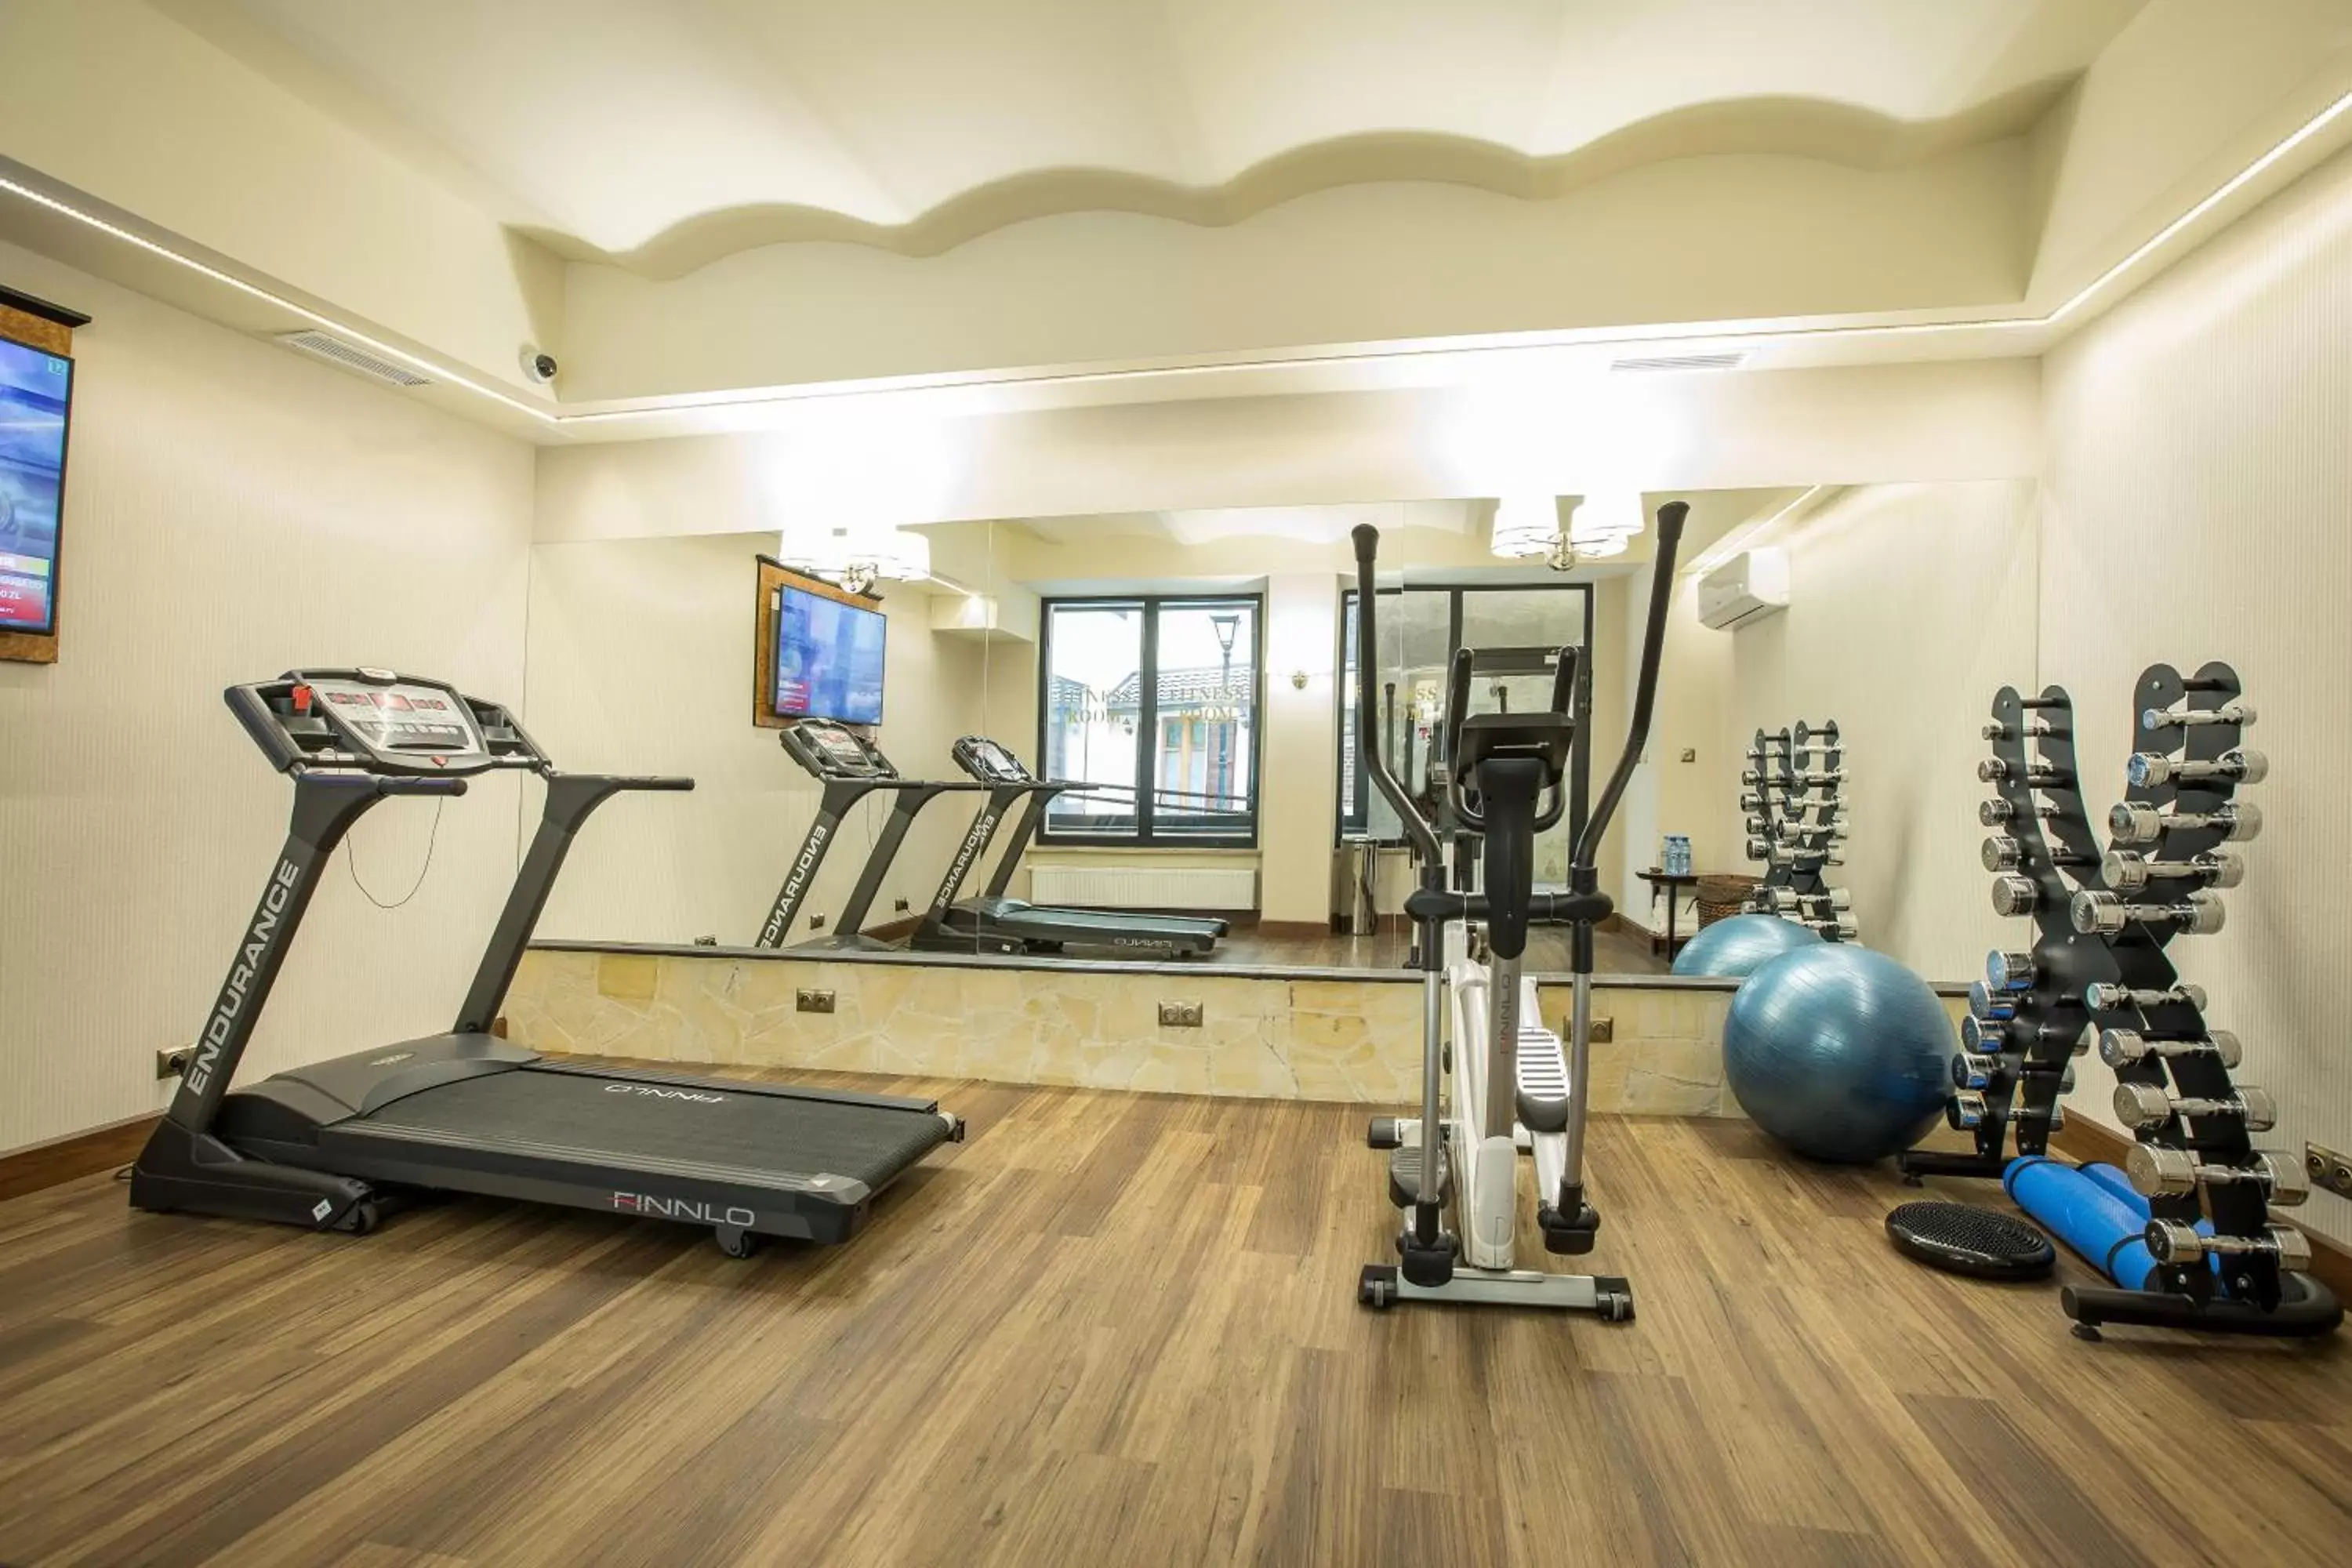 Fitness centre/facilities, Fitness Center/Facilities in Hotel Diament Plaza Gliwice